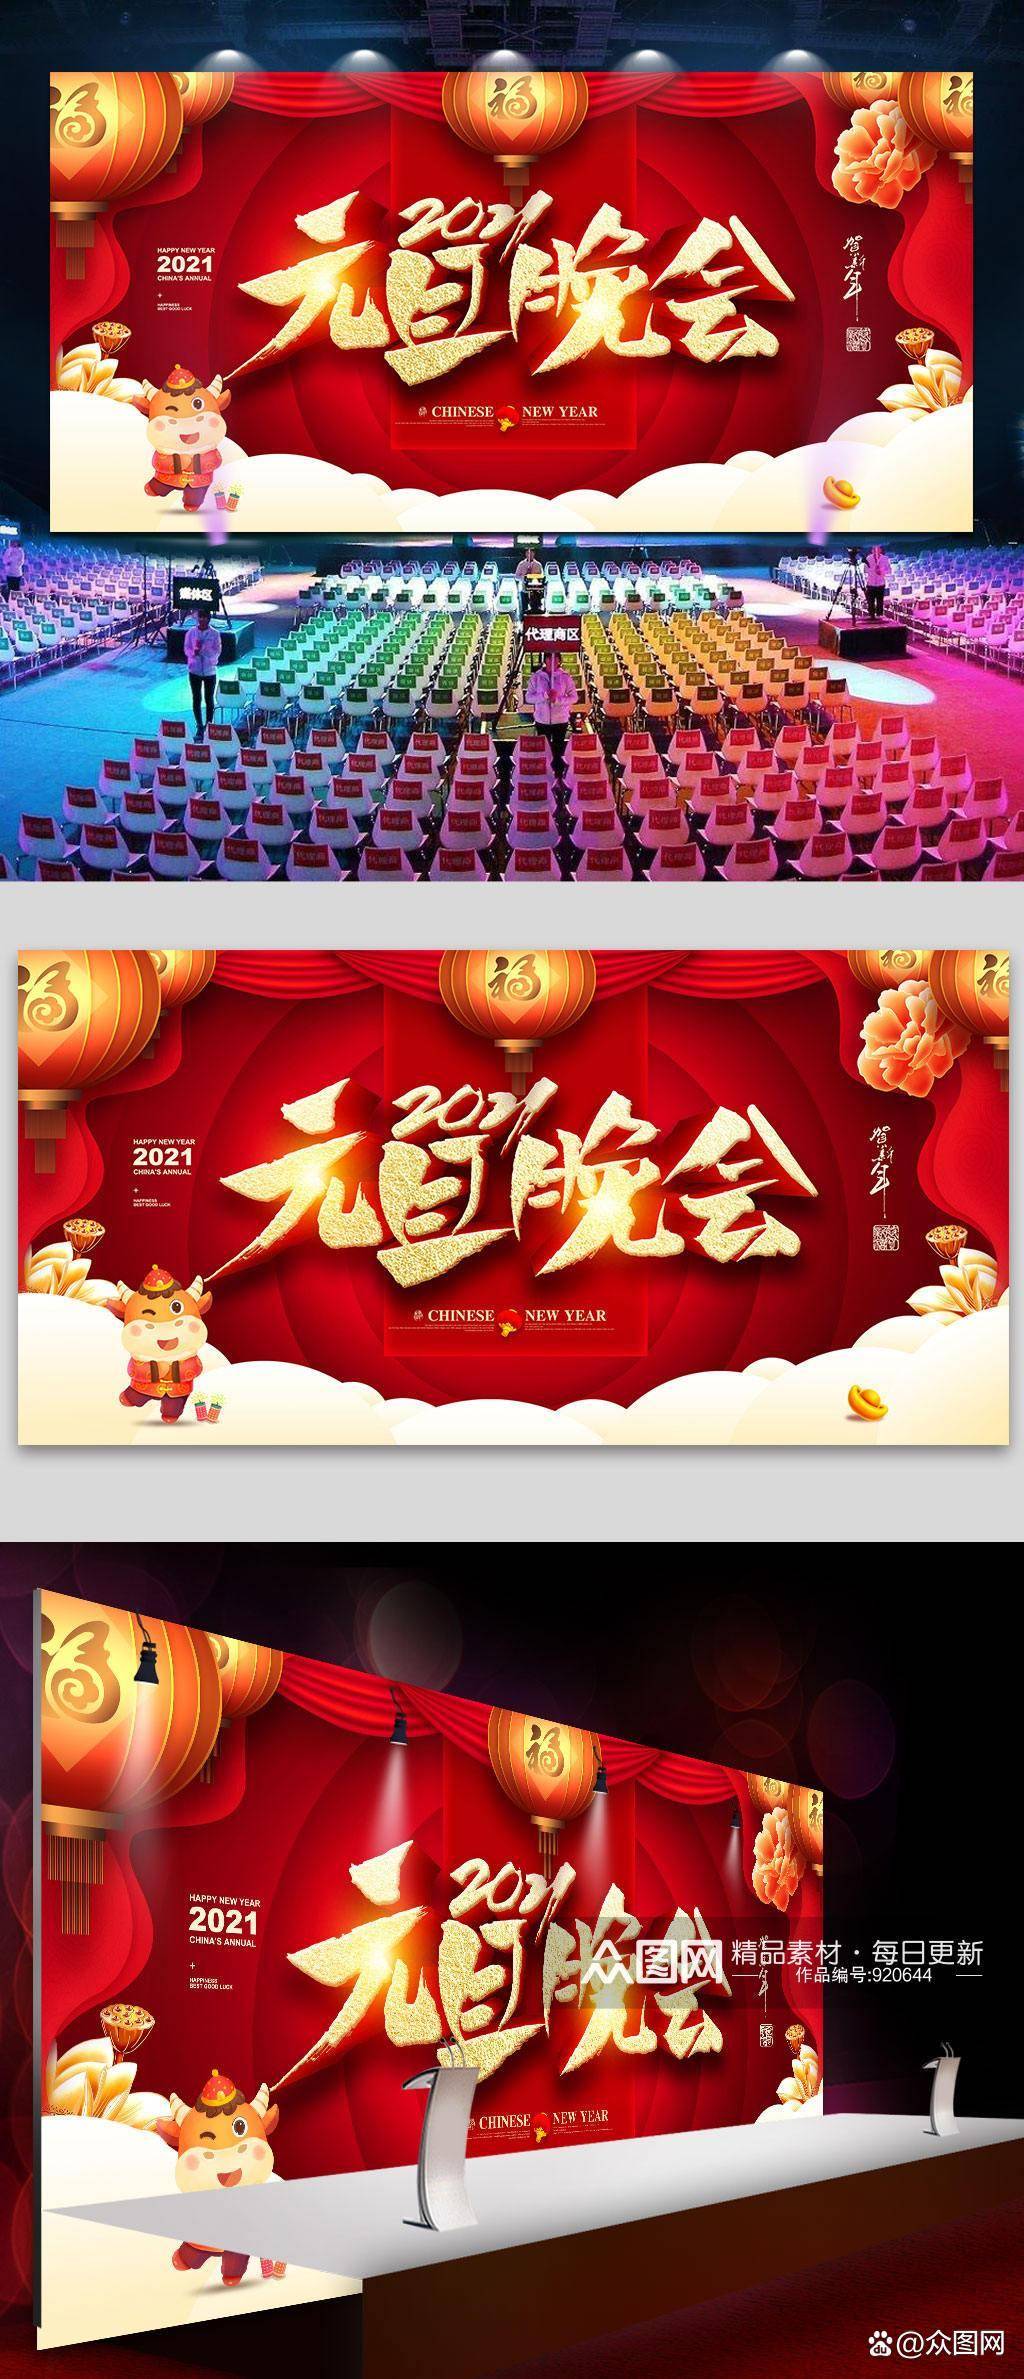 com8,企业创新红色元旦节联欢会海报晚会展板简单又漂亮图源:wwwzt